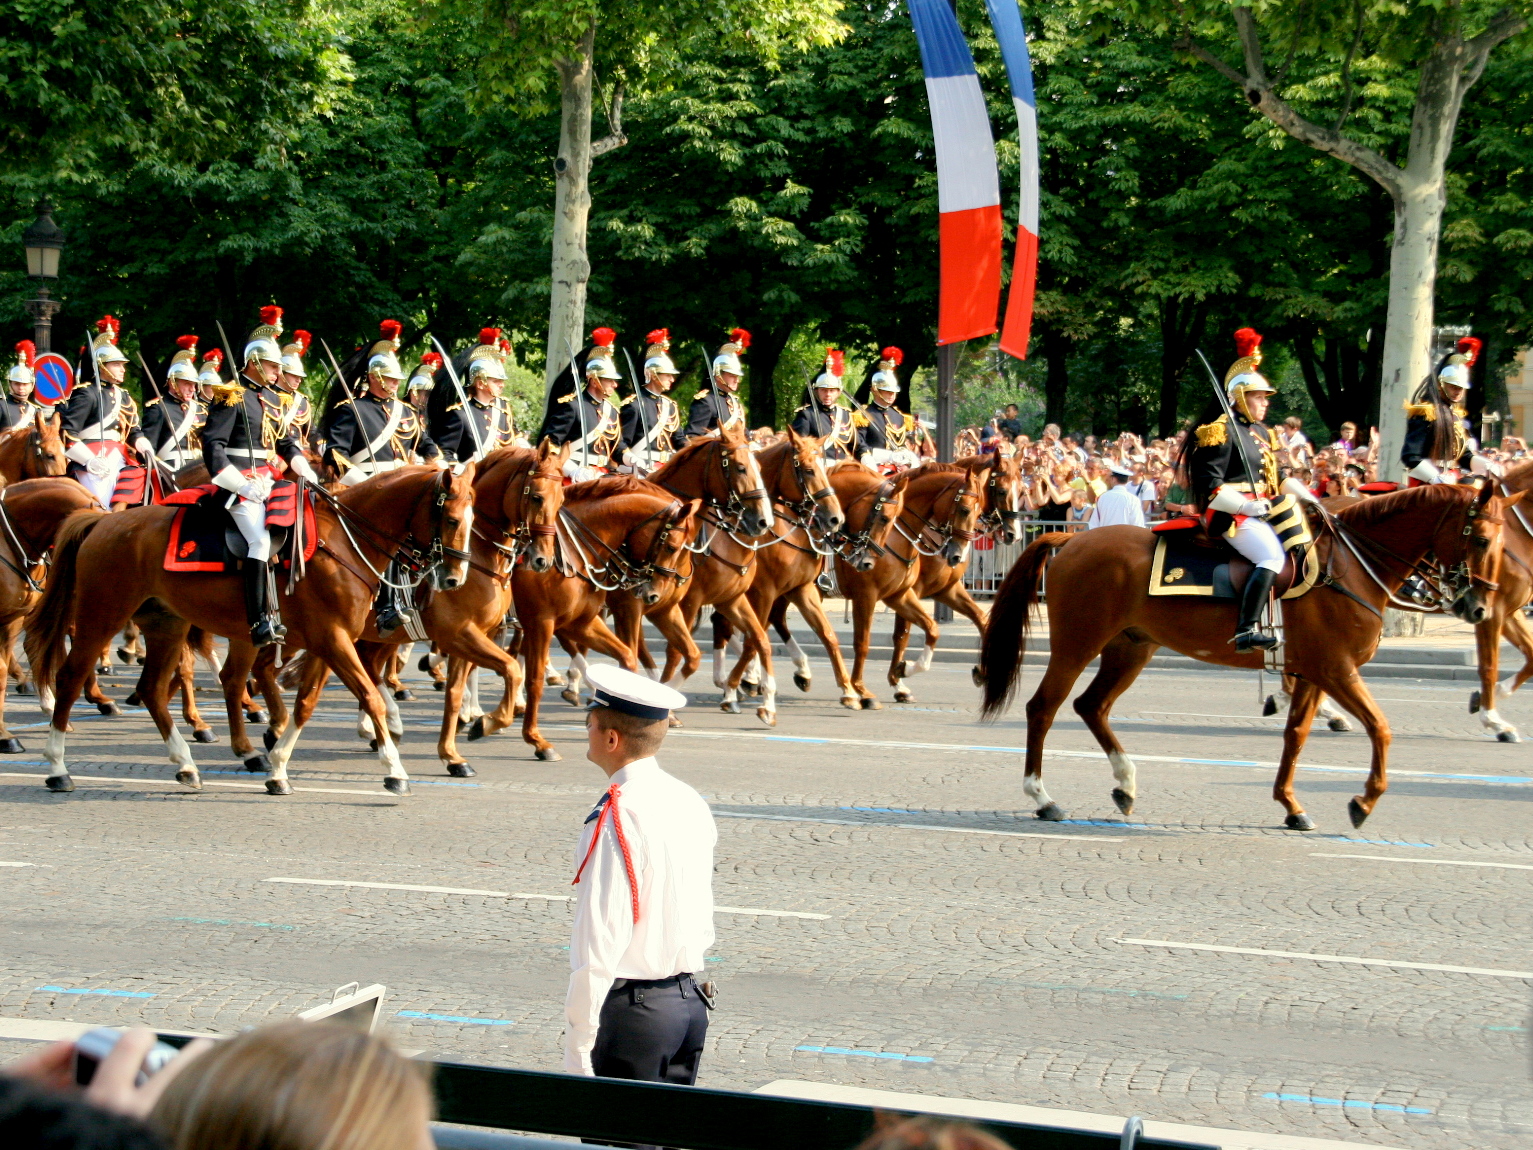 The Bastille Day parade on the Champs-Élysées in Paris © Craig Rettig